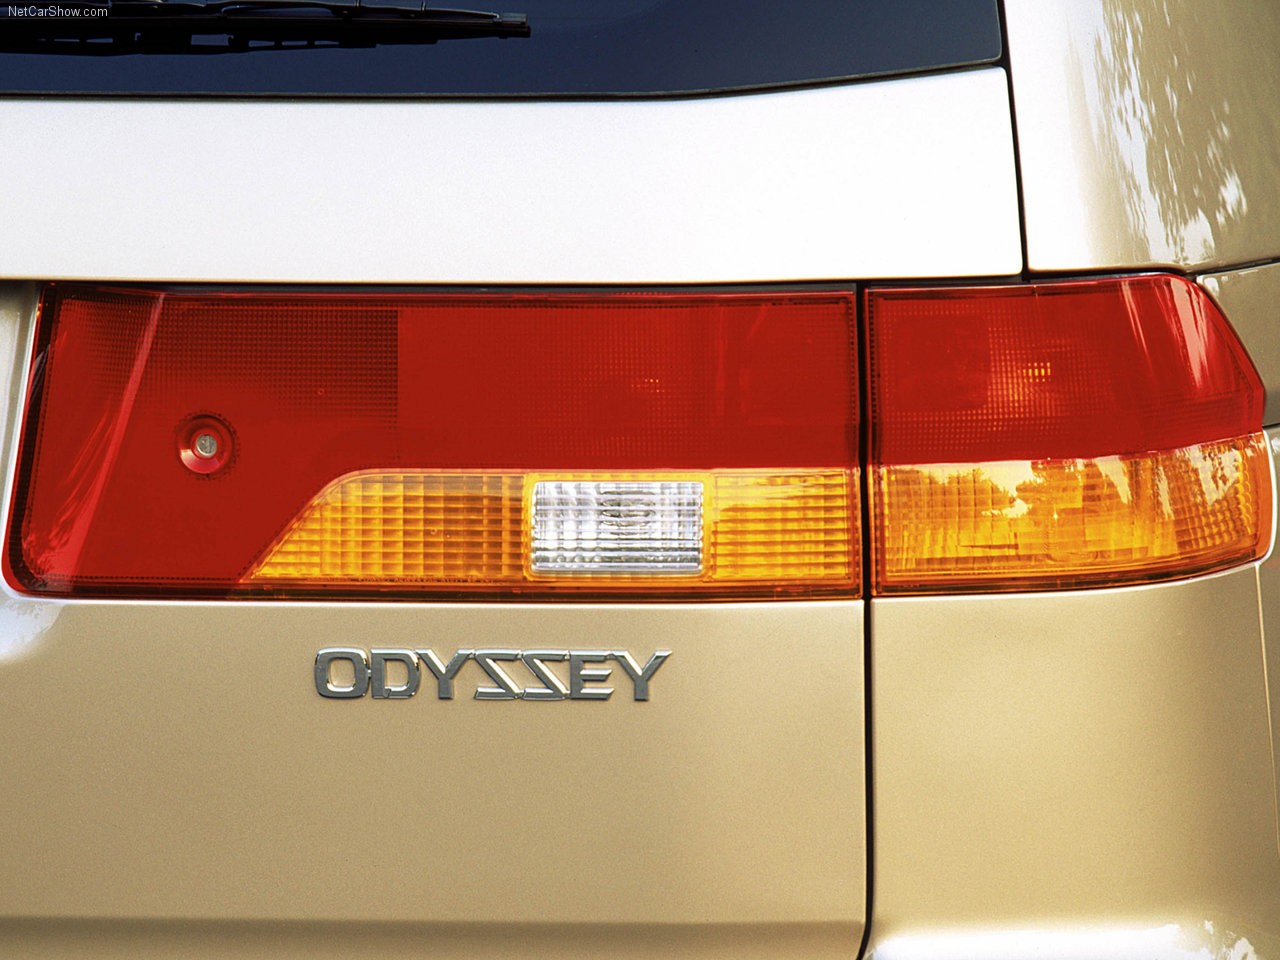 Honda Odyssey 2002 Honda-Odyssey-2002-1280-09